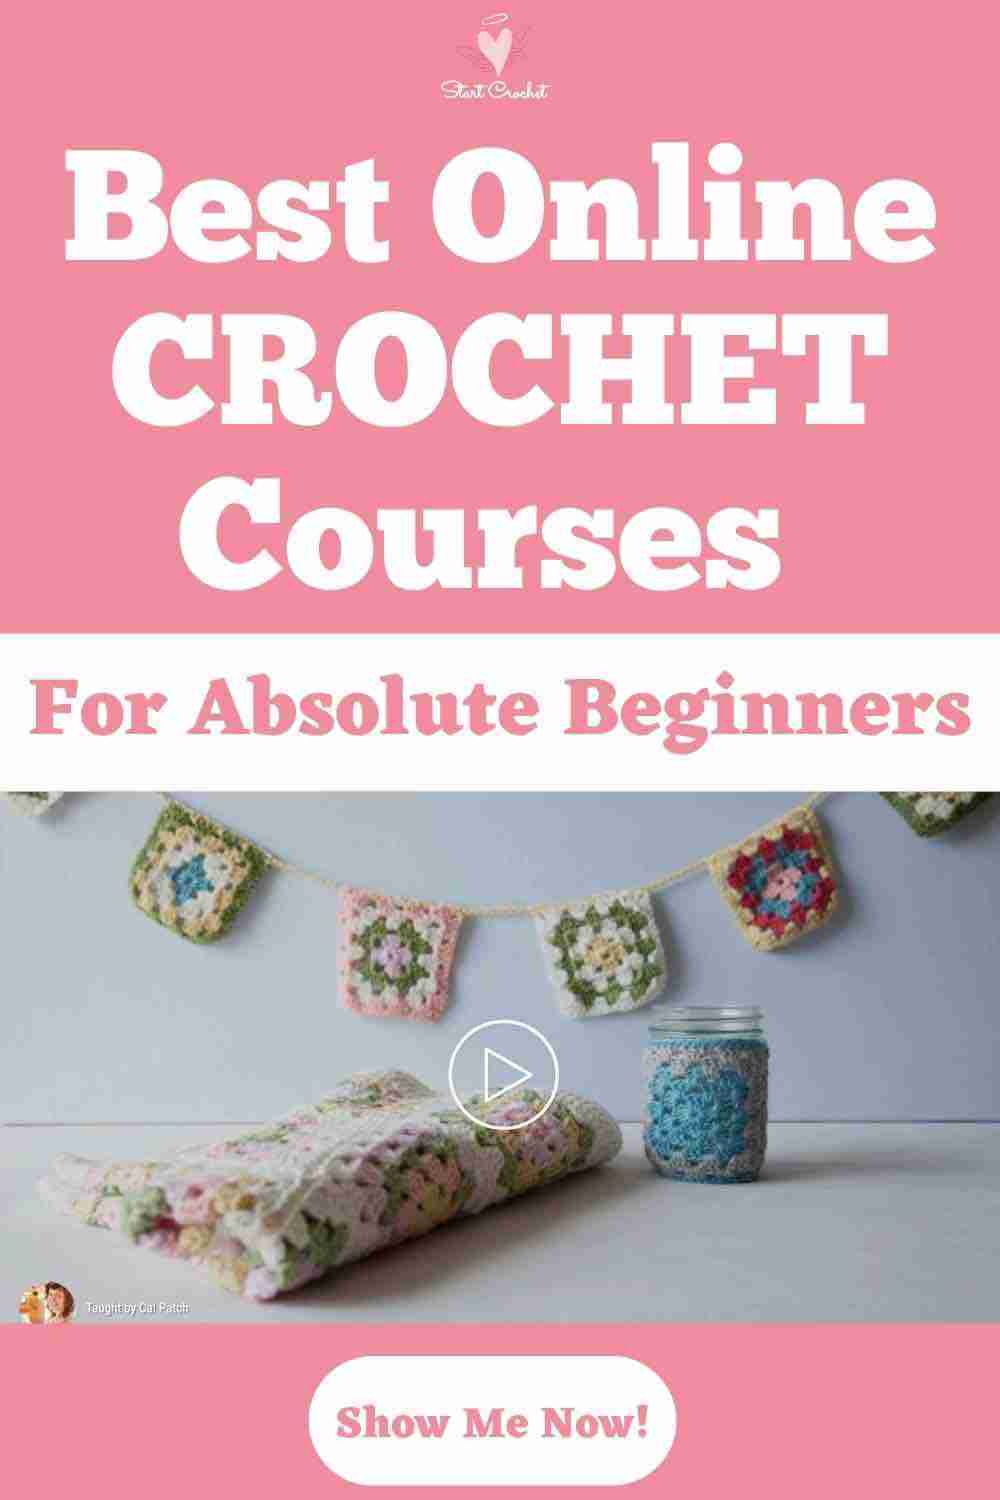 Best Online Crochet Courses for Beginners - Start Crochet